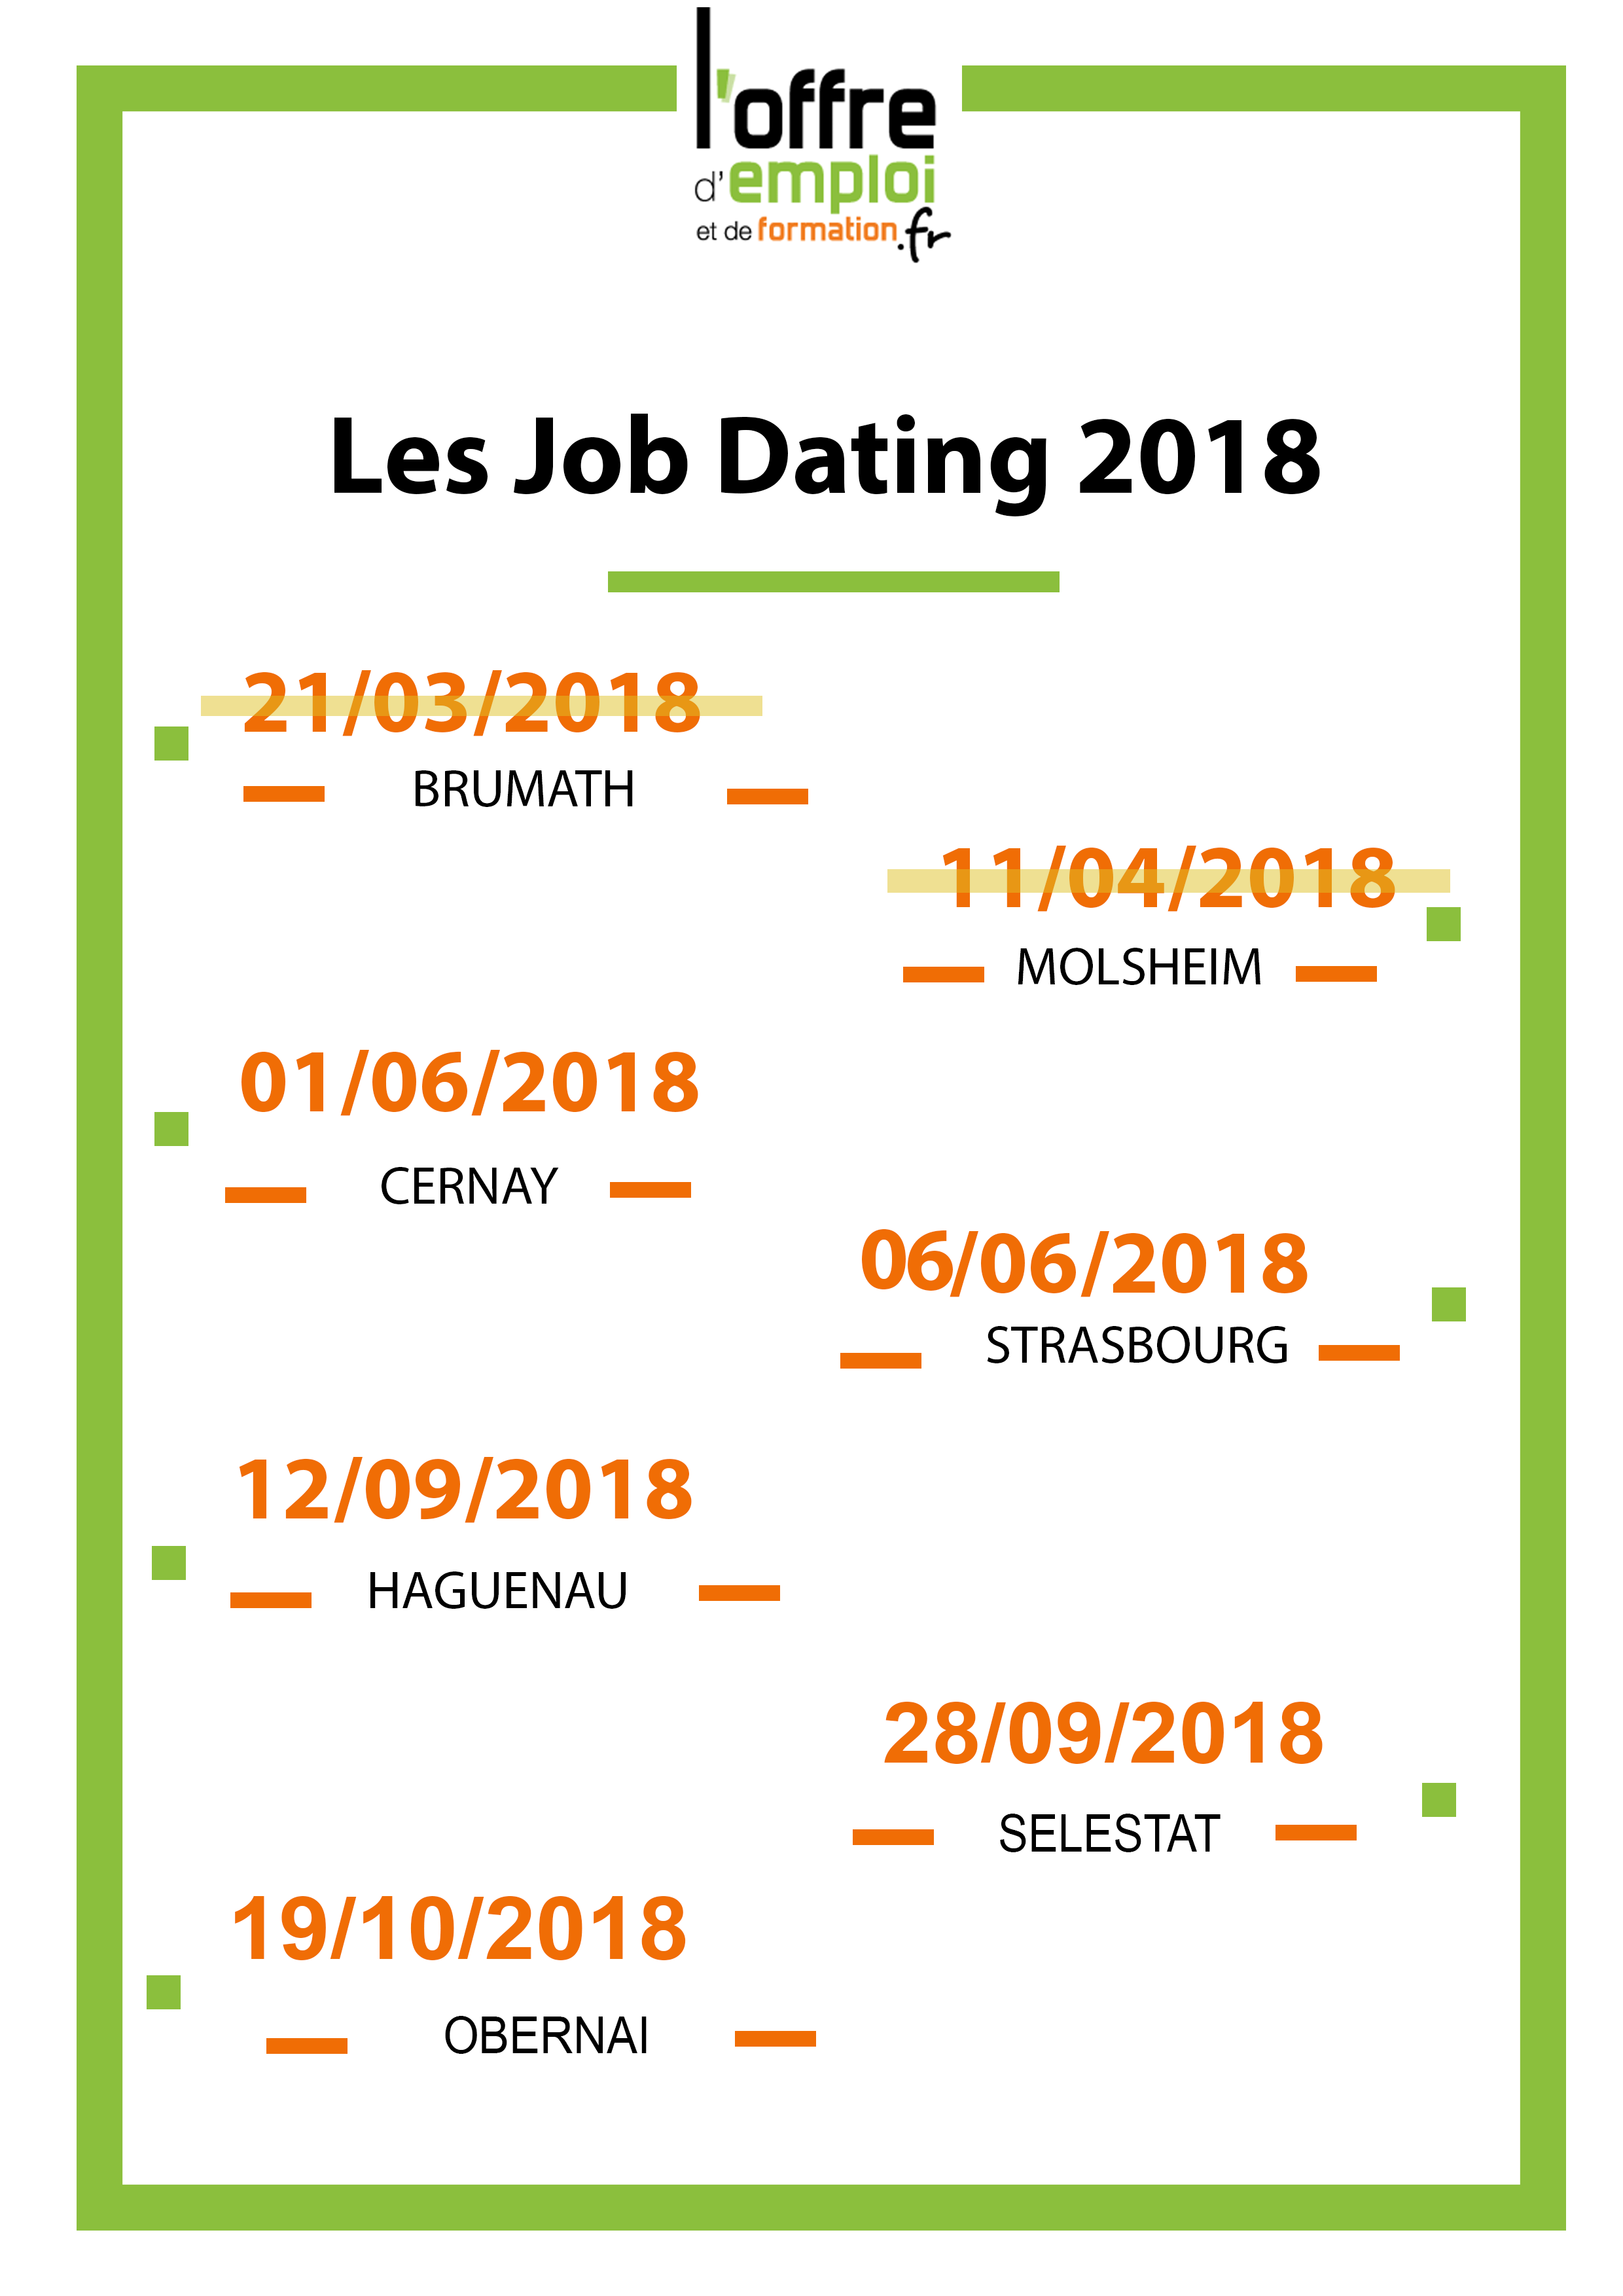 L'Offre d'emploi Alsace recrute Les premiers JOB DATING 2018